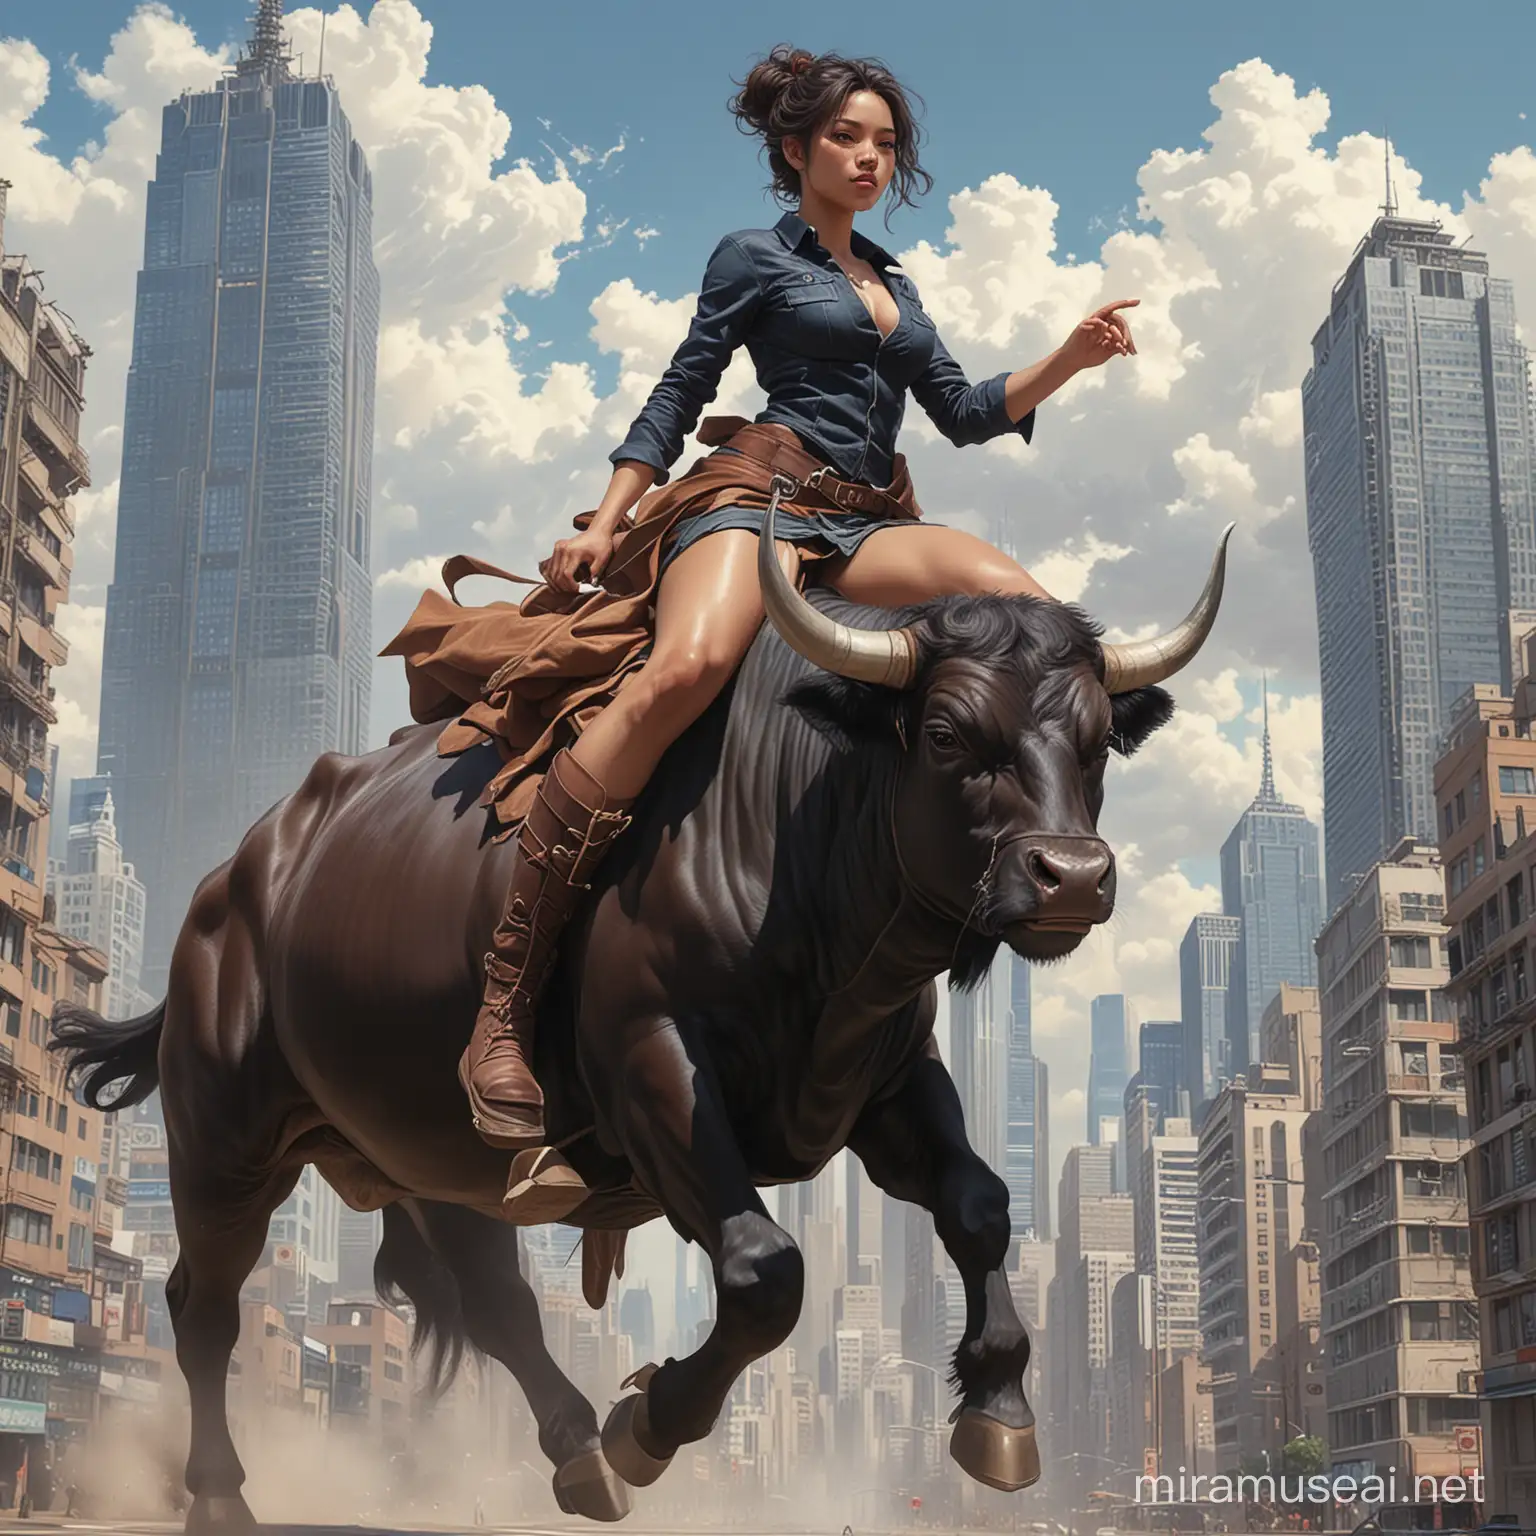 Beast Master Ranger Riding Bull in Urban Cityscape